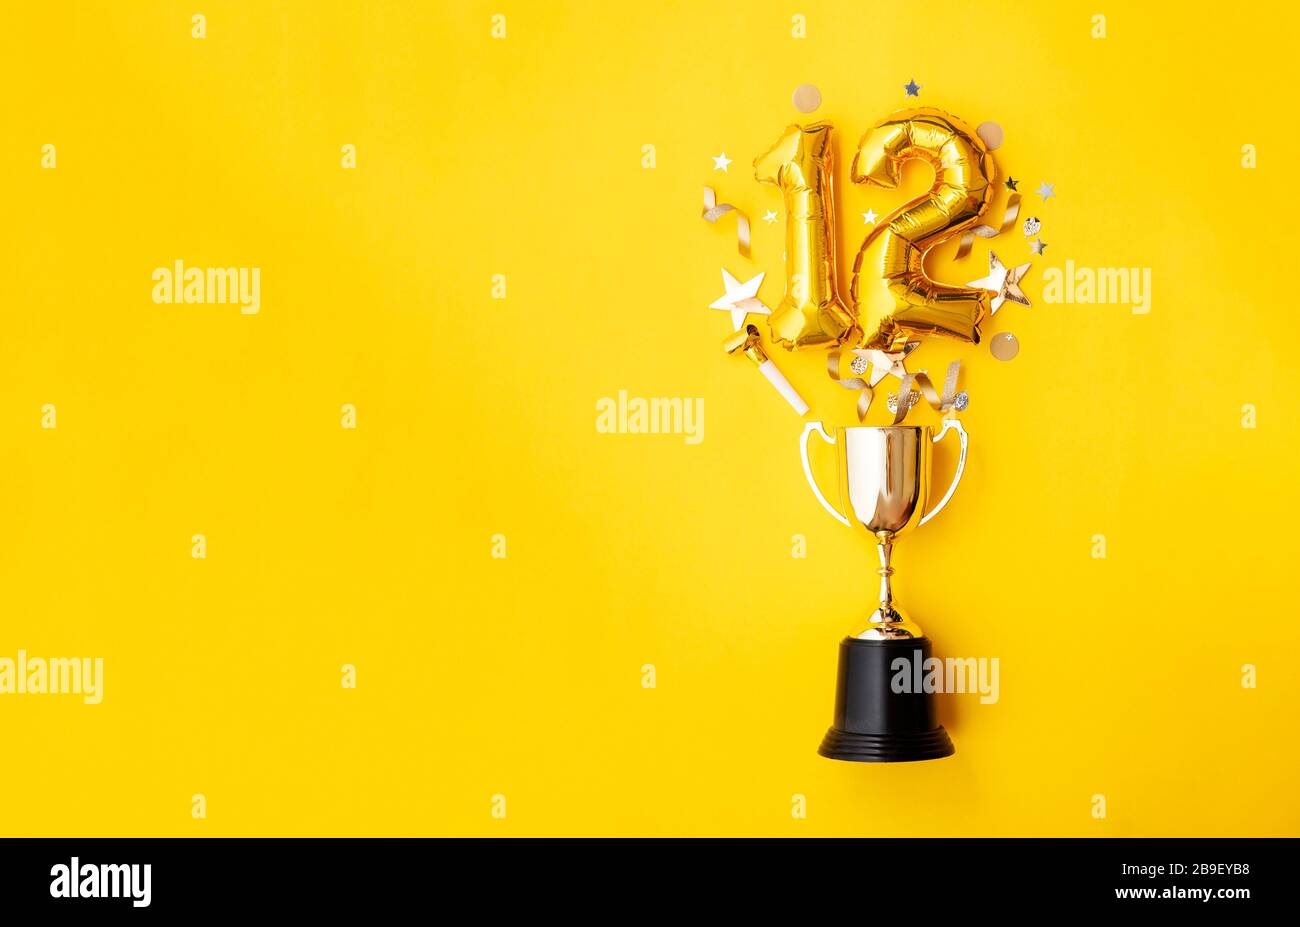 Le ballon numéro 12 de célébration de l'anniversaire de l'or explose à partir d'un trophée gagnant Banque D'Images